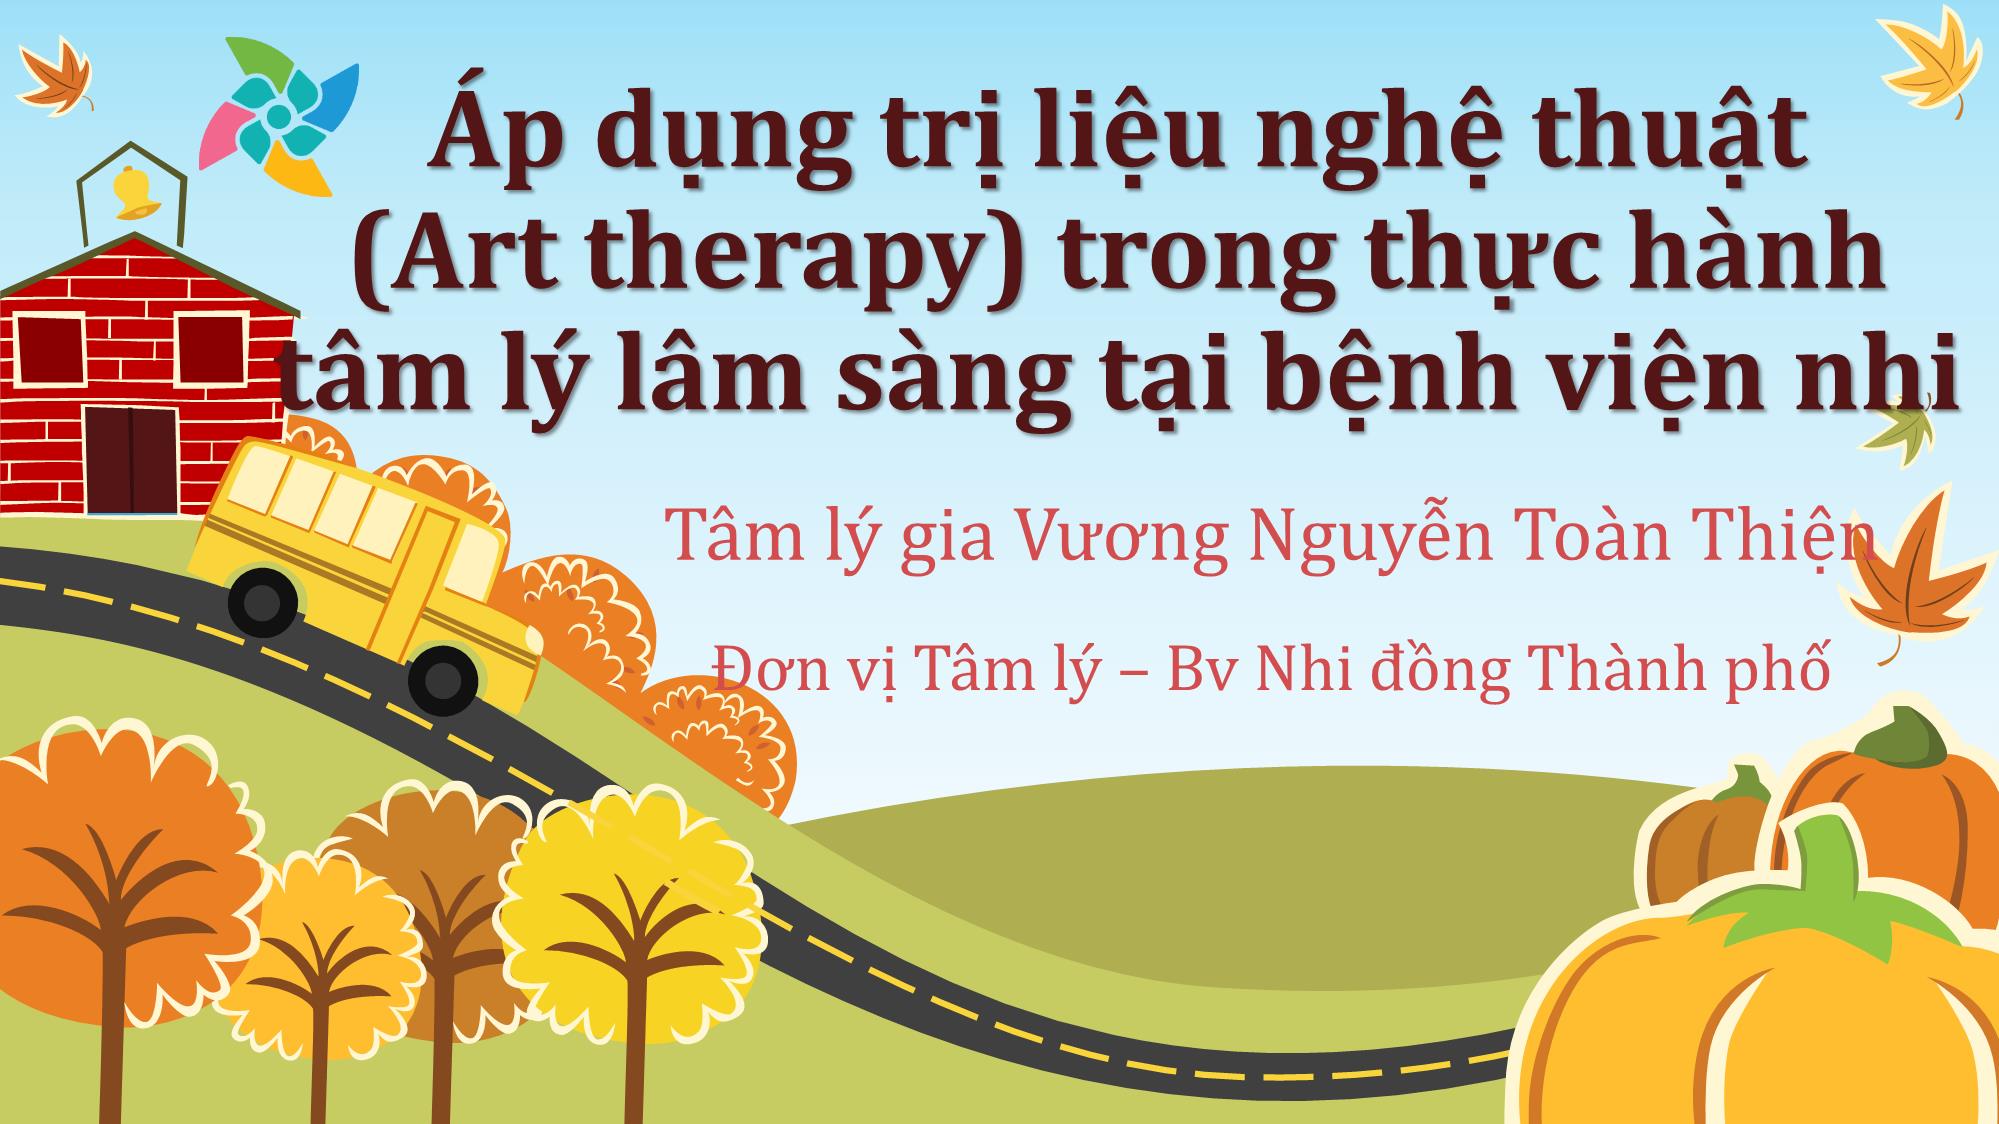 Áp dụng trị liệu nghệ thuật (Art therapy) trong thực hành tâm lý lâm sàng tại bệnh viện nhi trang 1